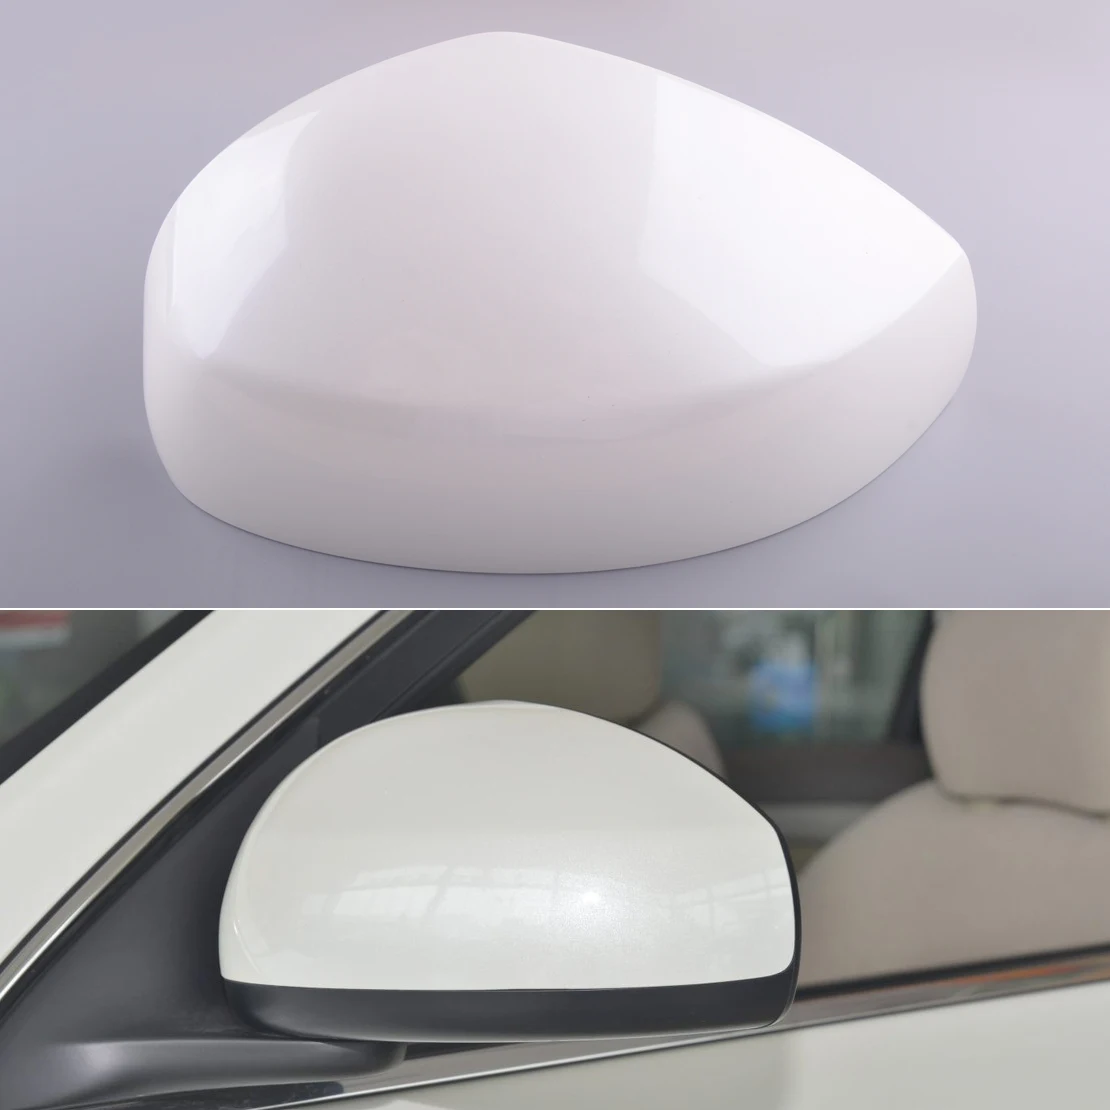 Coperchio specchietto retrovisore esterno sinistro auto adatto per Nissan Sentra 2013 2014 2015 2016 2017 2018 bianco perla